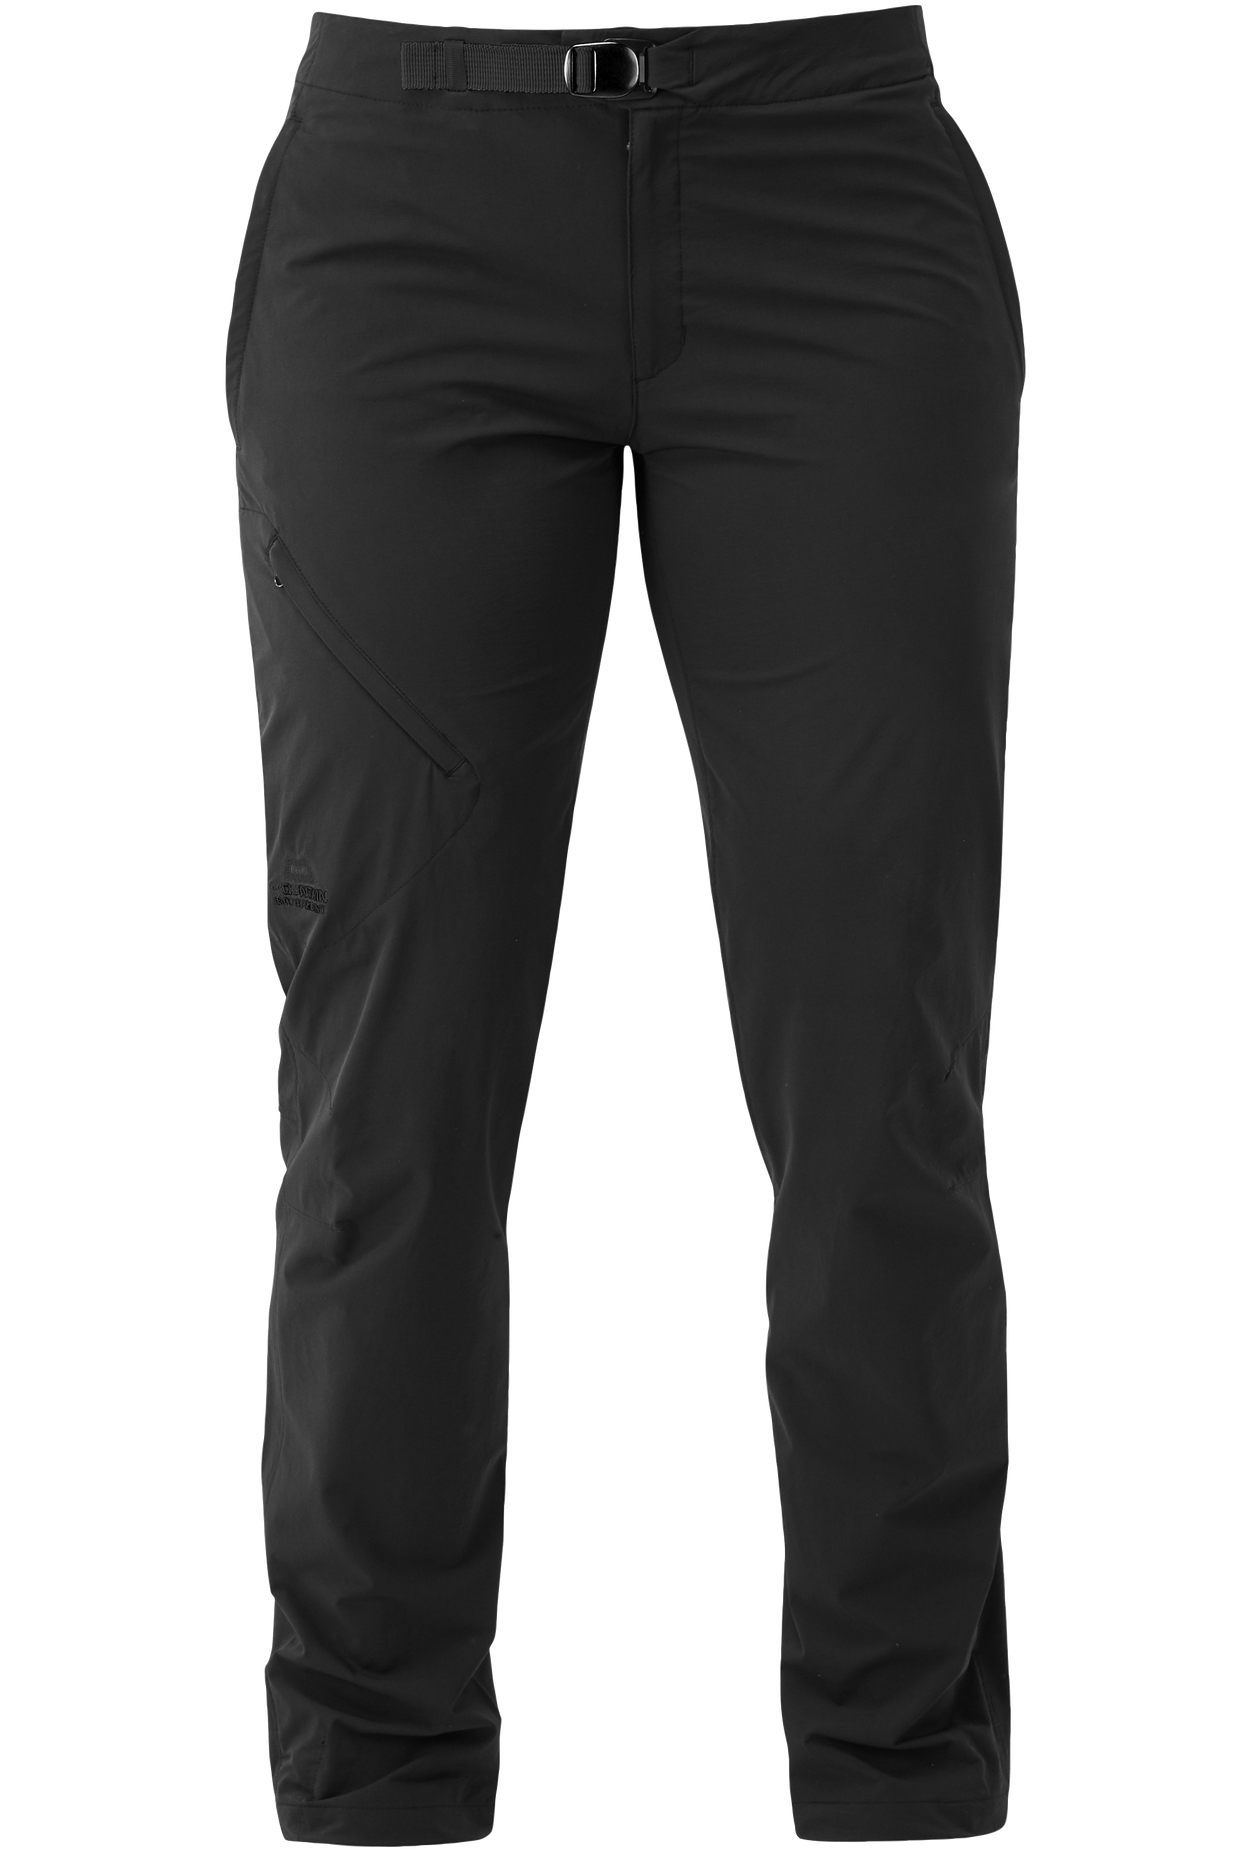 Mountain Equipment dámské softshellové kalhoty Comici Wmns Pant - prodloužené Barva: black/black, Velikost: 14/L